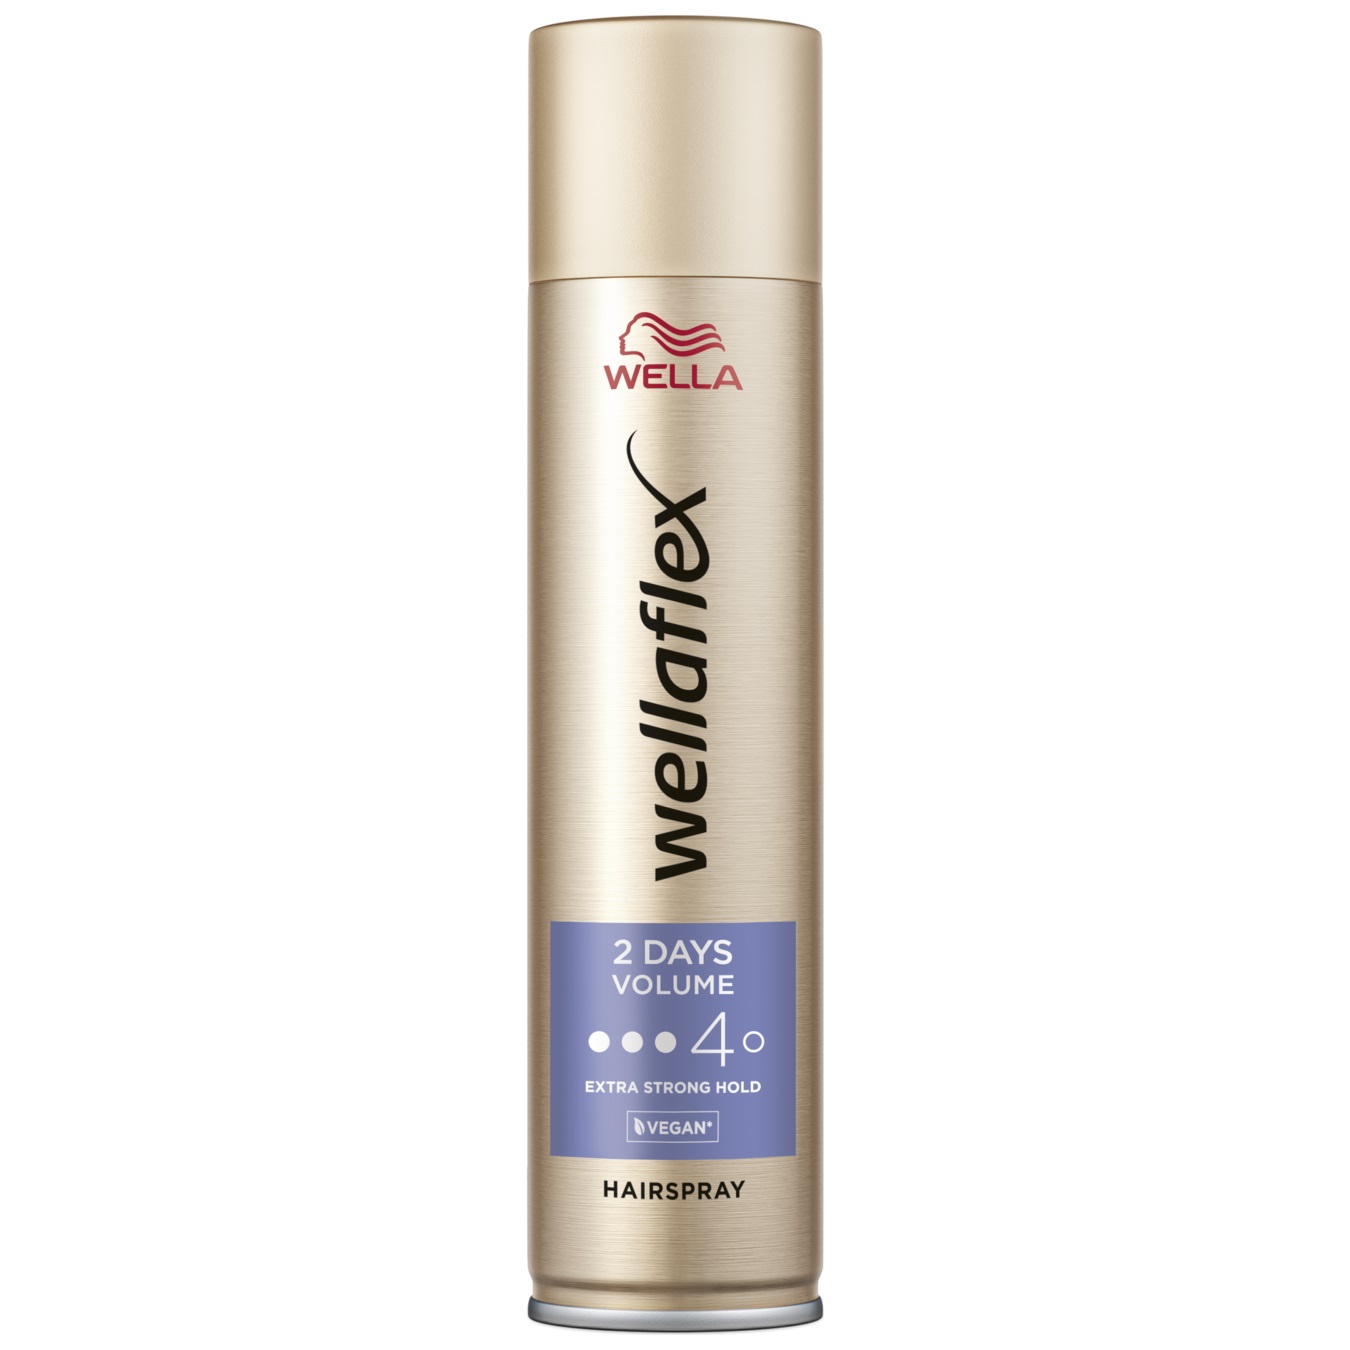 WELLAFLEX hairspray VOLUME UP TO 2 DAYS (4) 250 ml